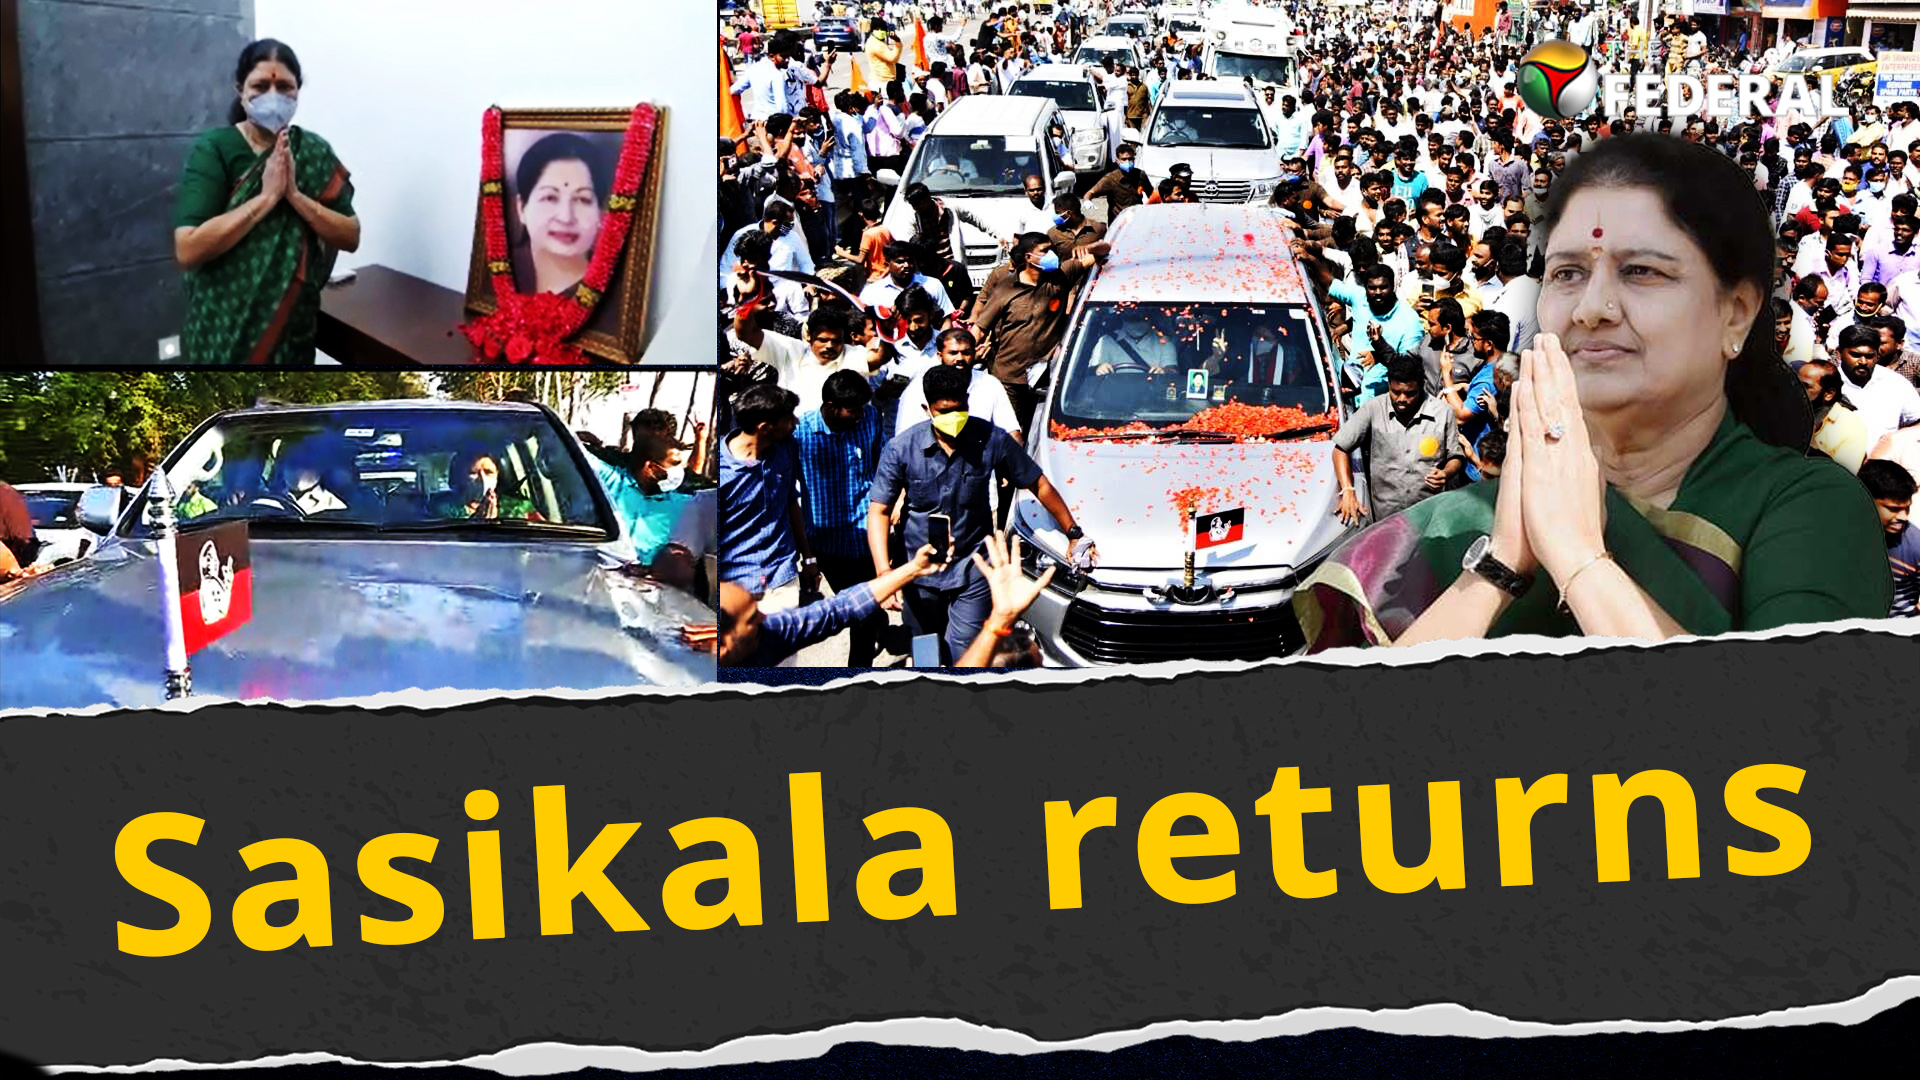 Sasikala returns to Chennai, AIADMK restless